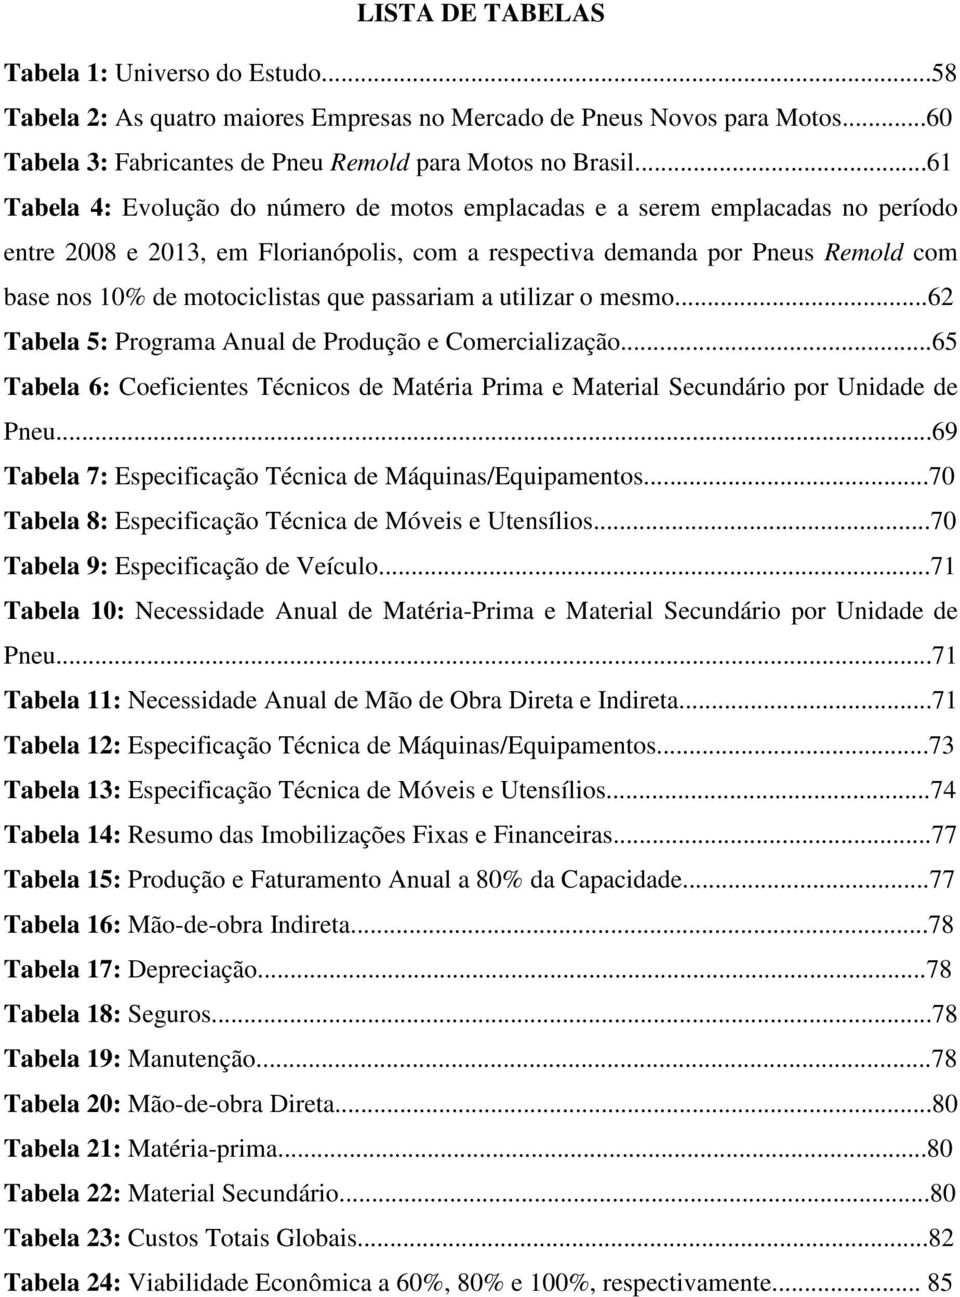 que passariam a utilizar o mesmo...62 Tabela 5: Programa Anual de Produção e Comercialização...65 Tabela 6: Coeficientes Técnicos de Matéria Prima e Material Secundário por Unidade de Pneu.